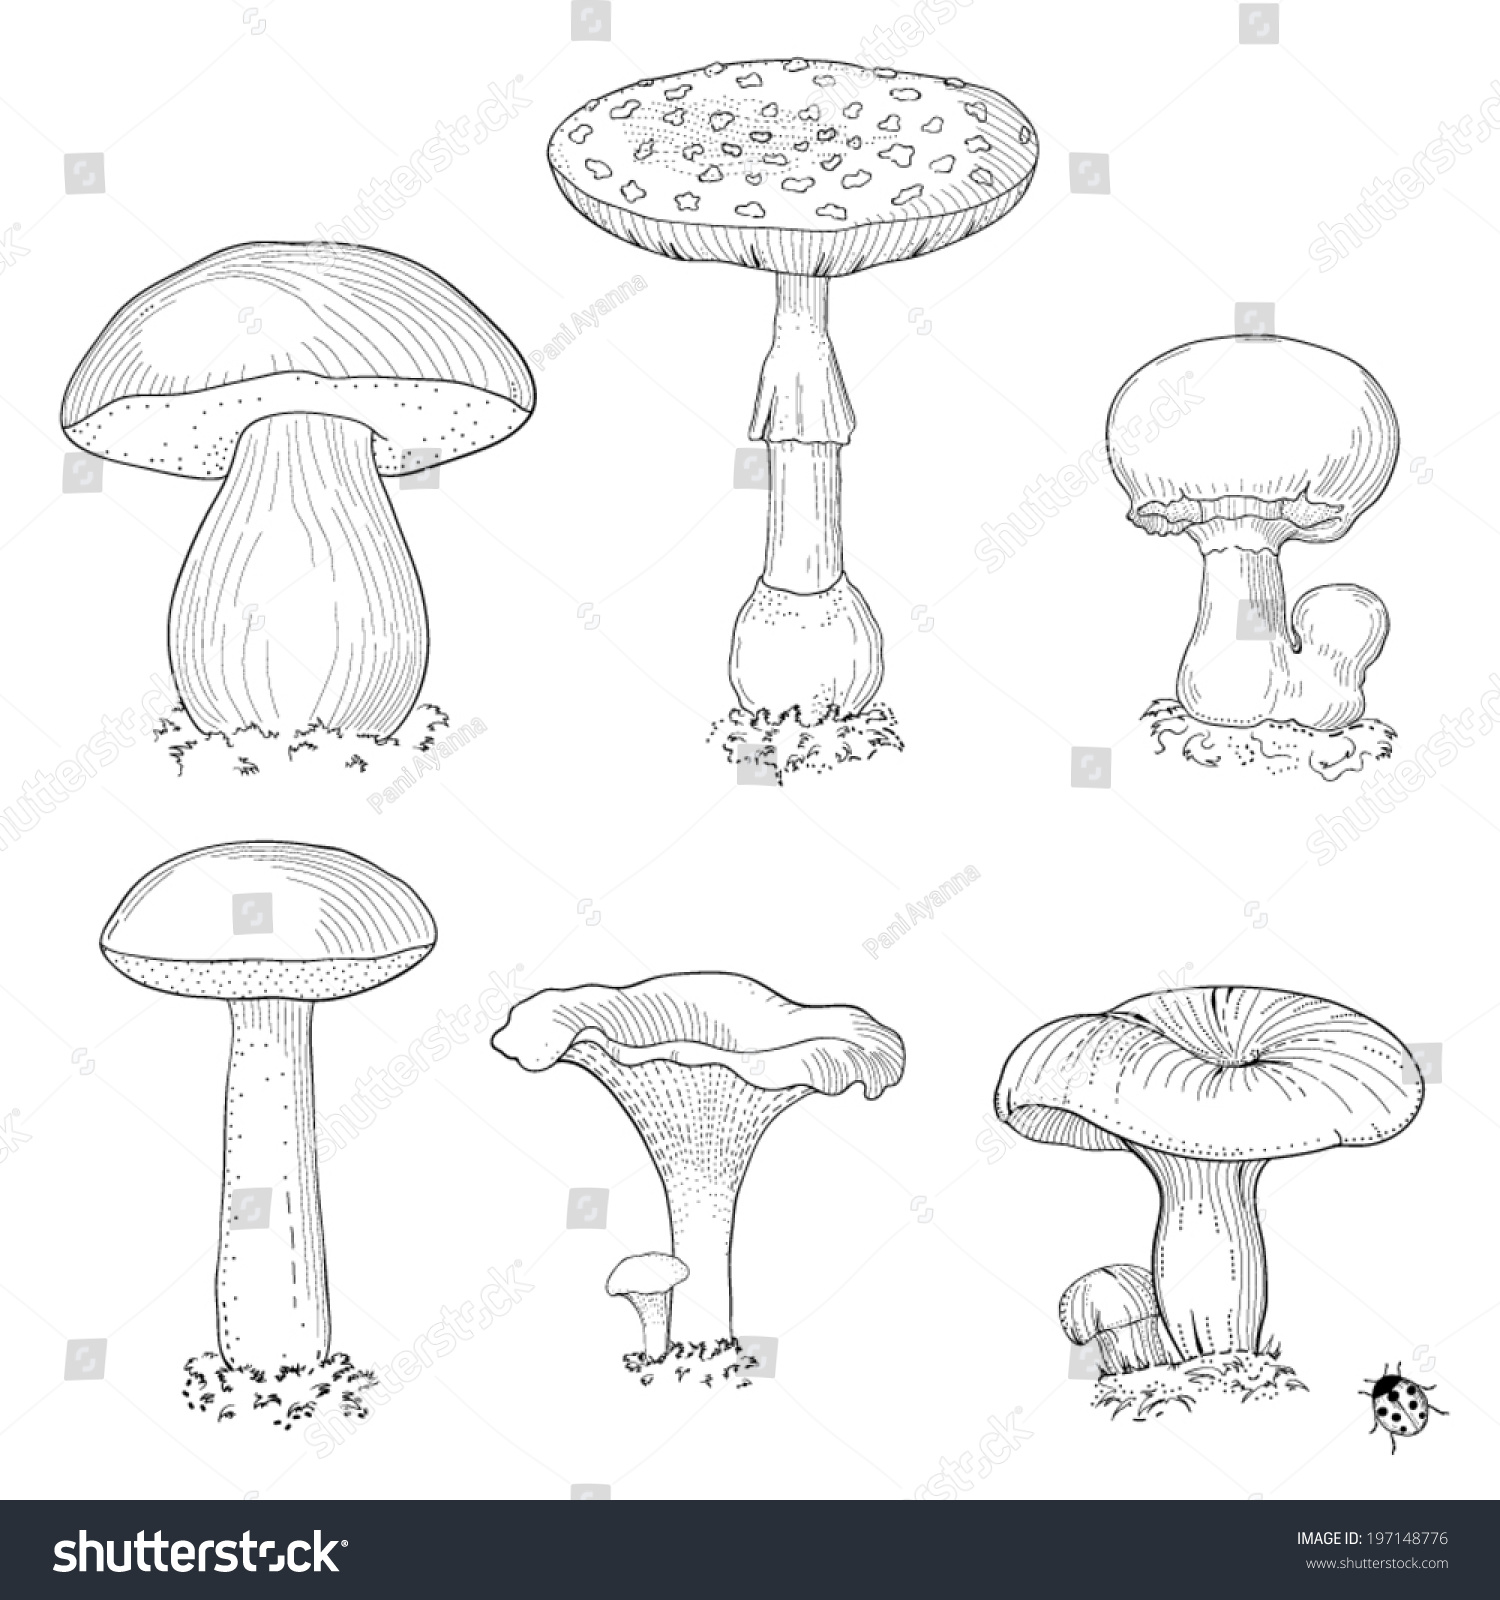 Съедобные и несъедобные грибы карандашом